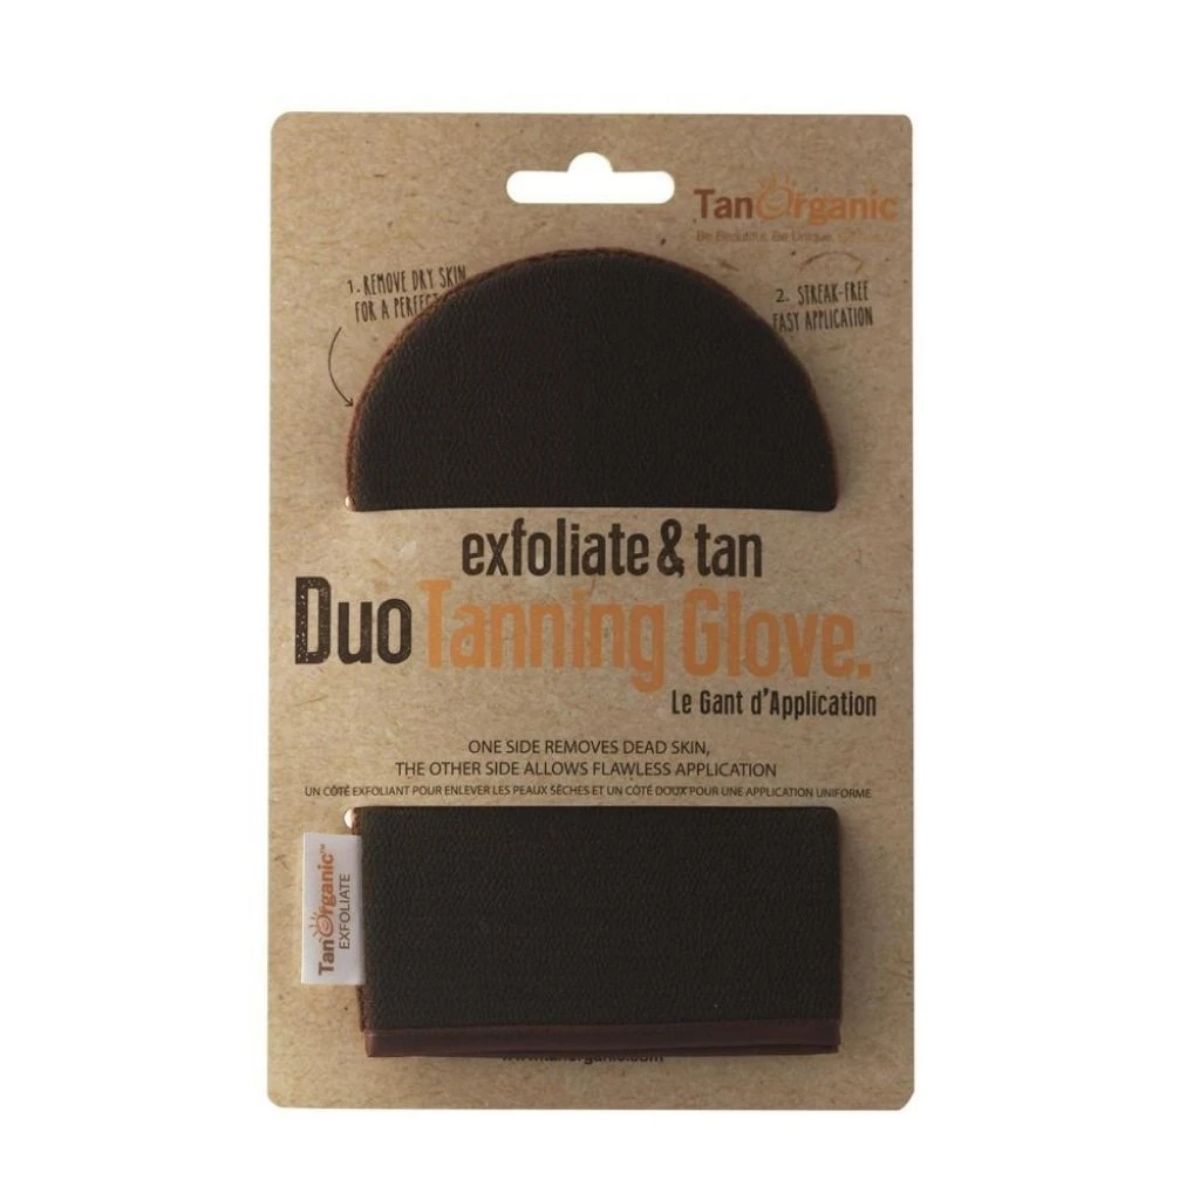 Tan Organic Exfoliate & Tan Duo Tanning Glove